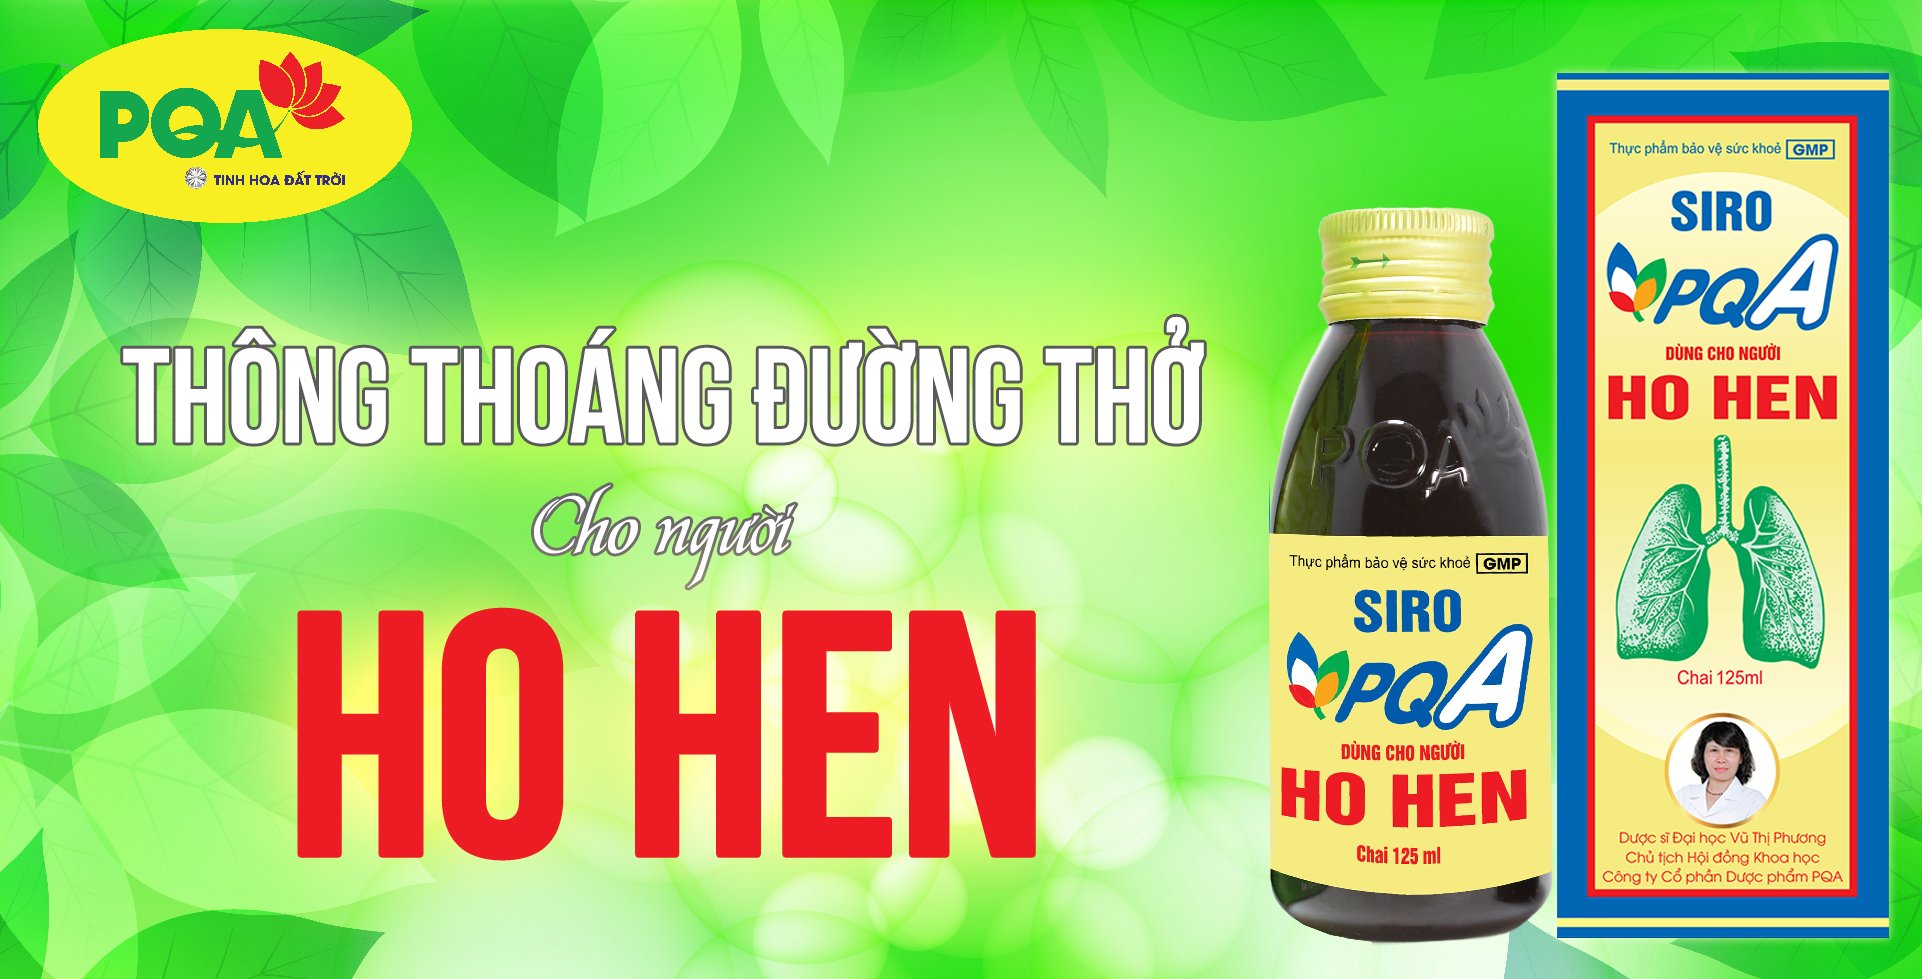 PQA Ho Hen Siro